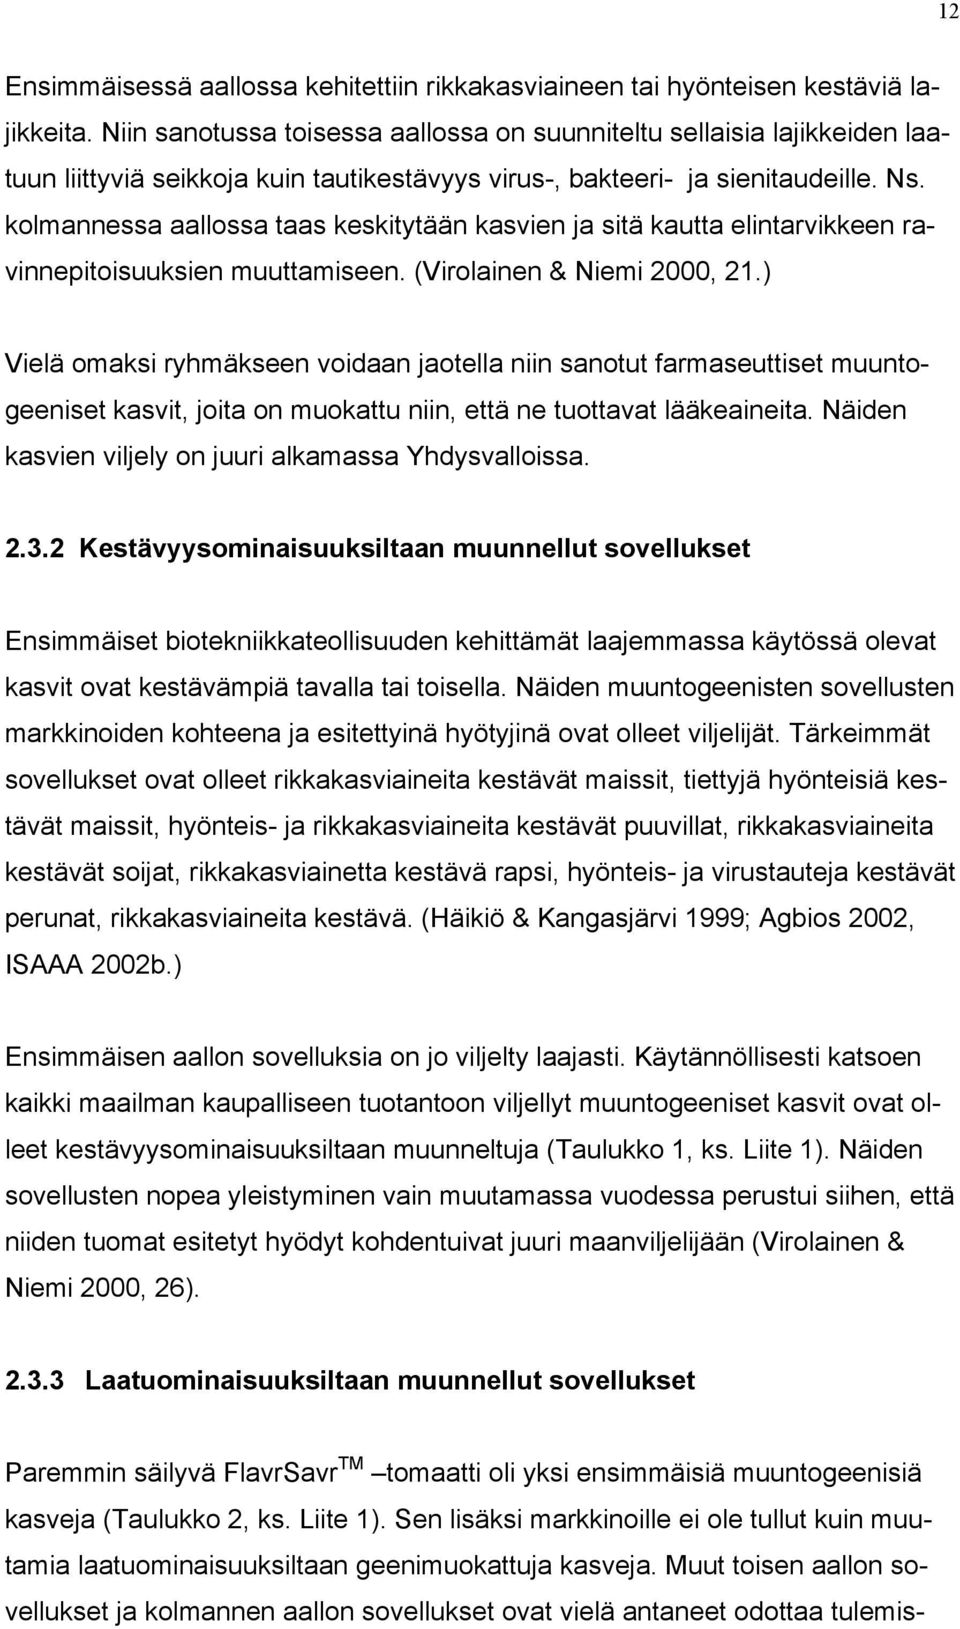 kolmannessa aallossa taas keskitytään kasvien ja sitä kautta elintarvikkeen ravinnepitoisuuksien muuttamiseen. (Virolainen & Niemi 2000, 21.